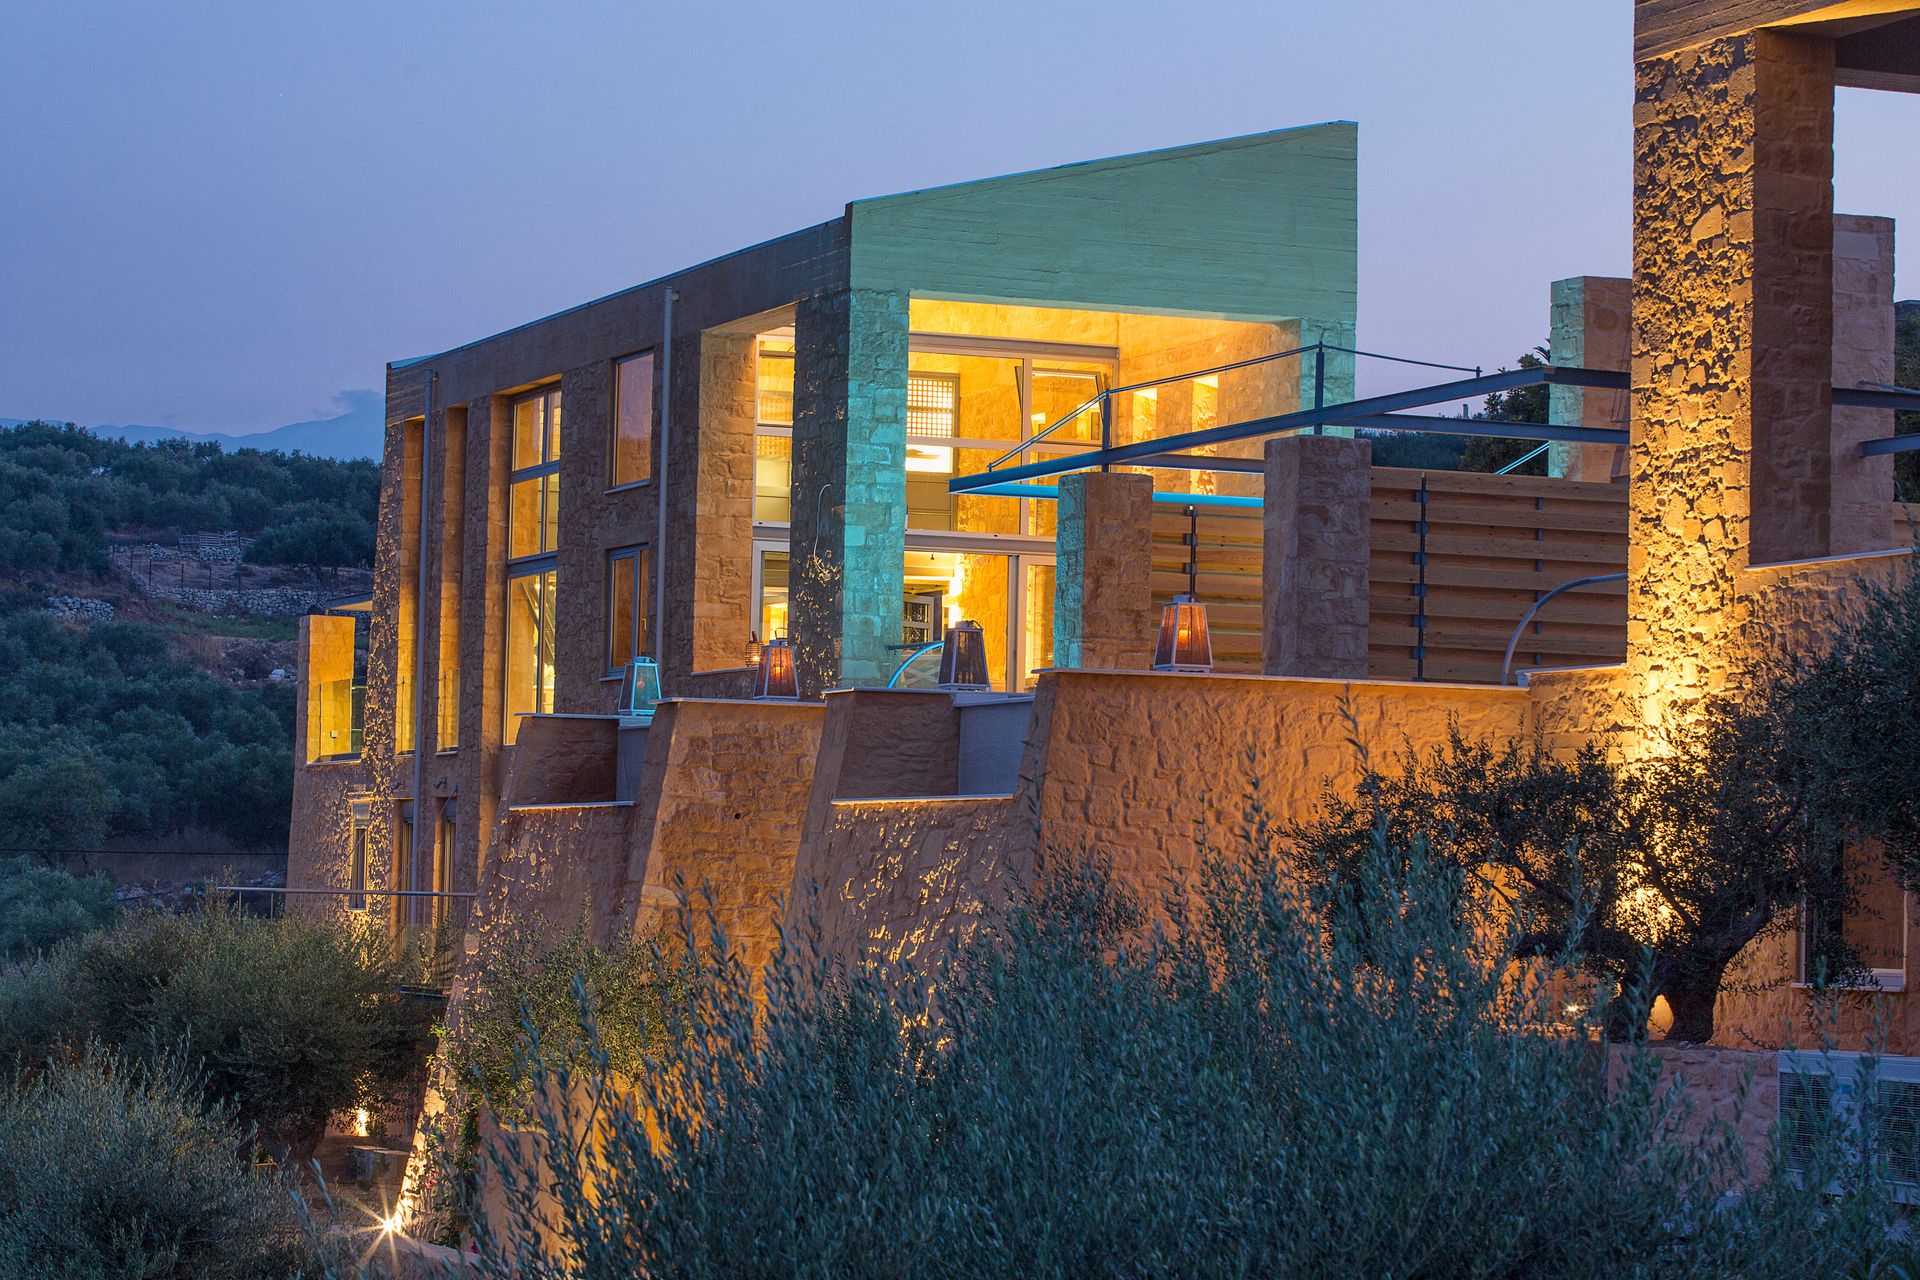 Olea Cretan Luxury Villas - Χανιά, Κρήρη ✦ 7 Ημέρες (6 Διανυκτερεύσεις) ✦ έως 6 άτομα ✦ 1 ✦ έως 30/09/2022 ✦ Με Ιδιωτική Πισίνα!